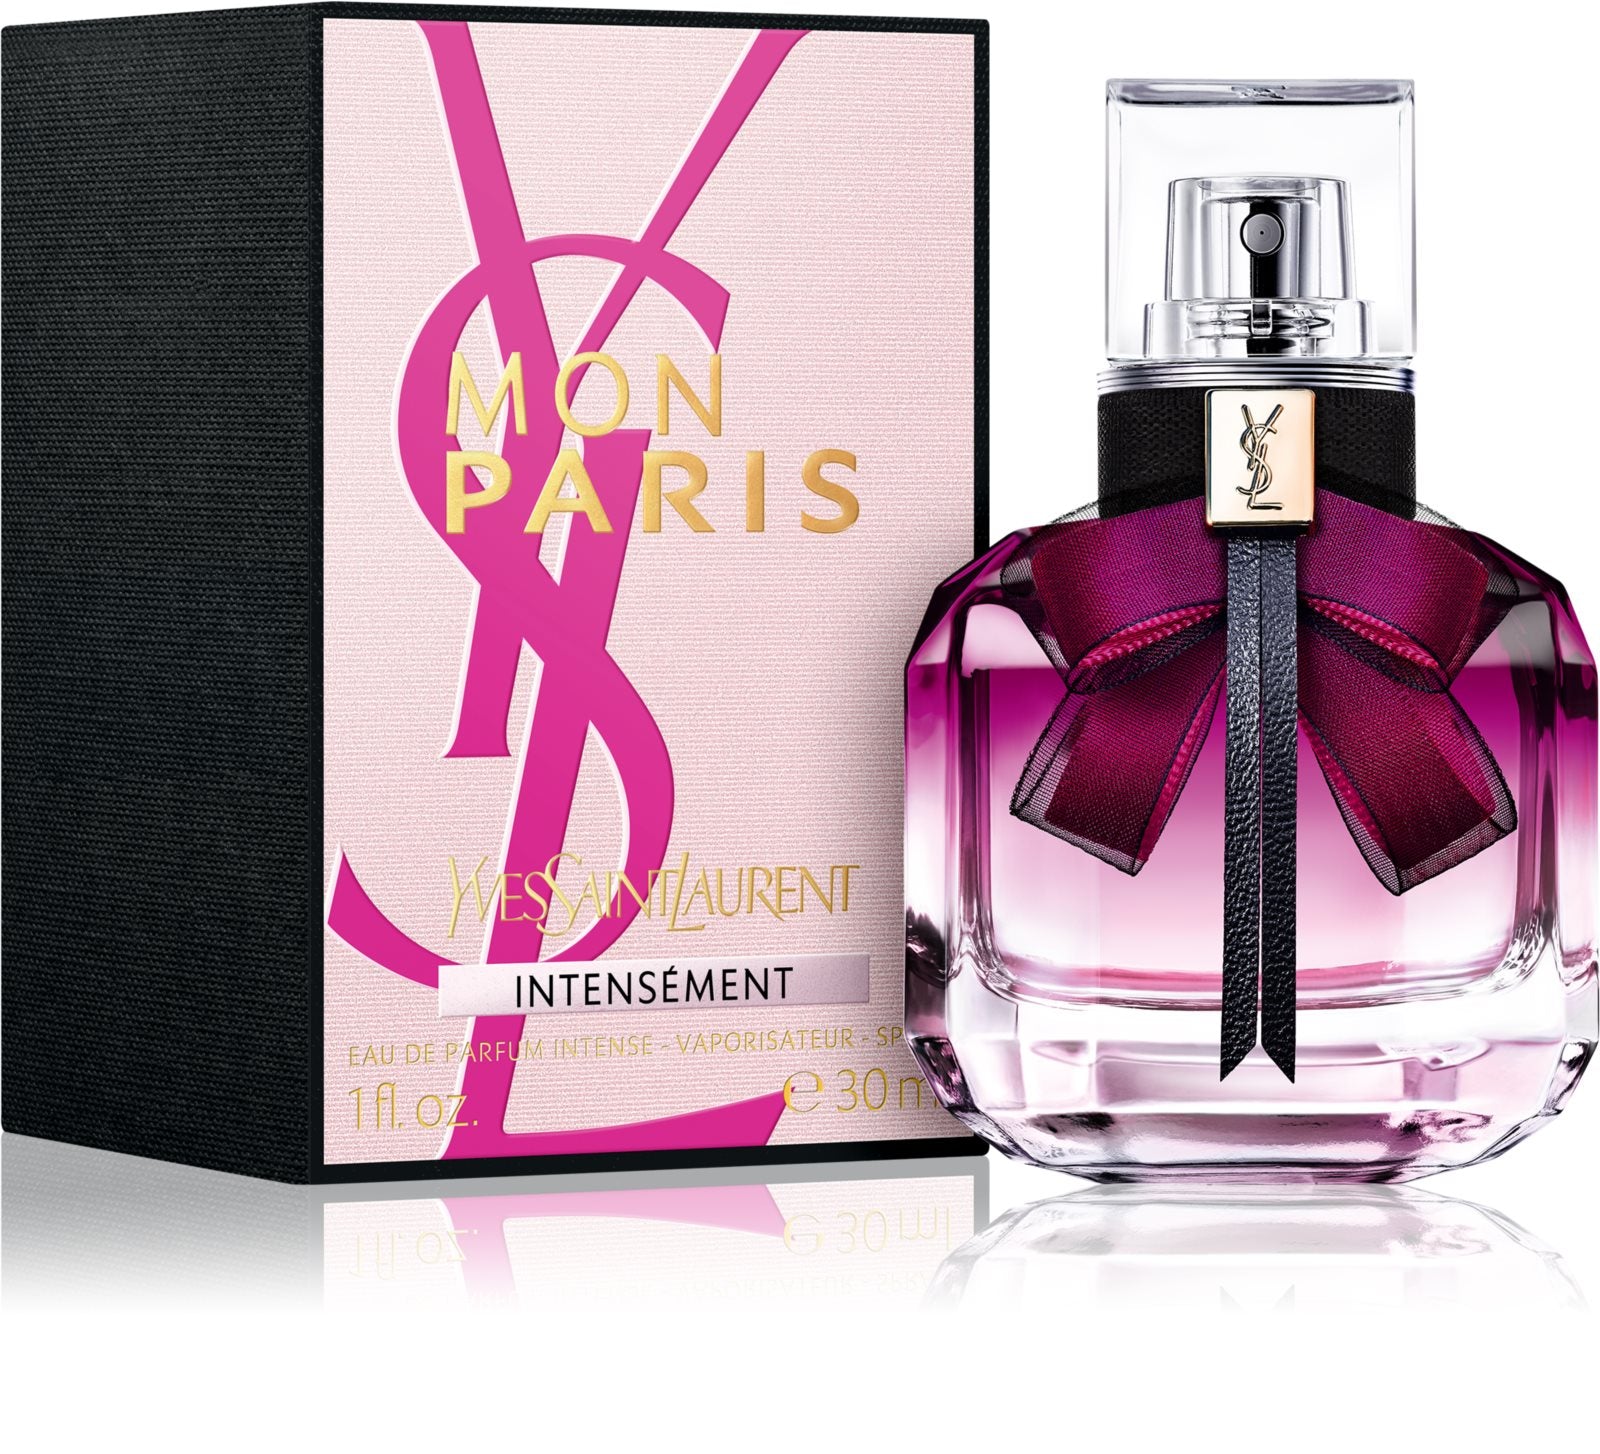 BS24 AG Saint ml Intensément Eau Yves Mon Laurent Paris de Switzerland 30 – Parfum